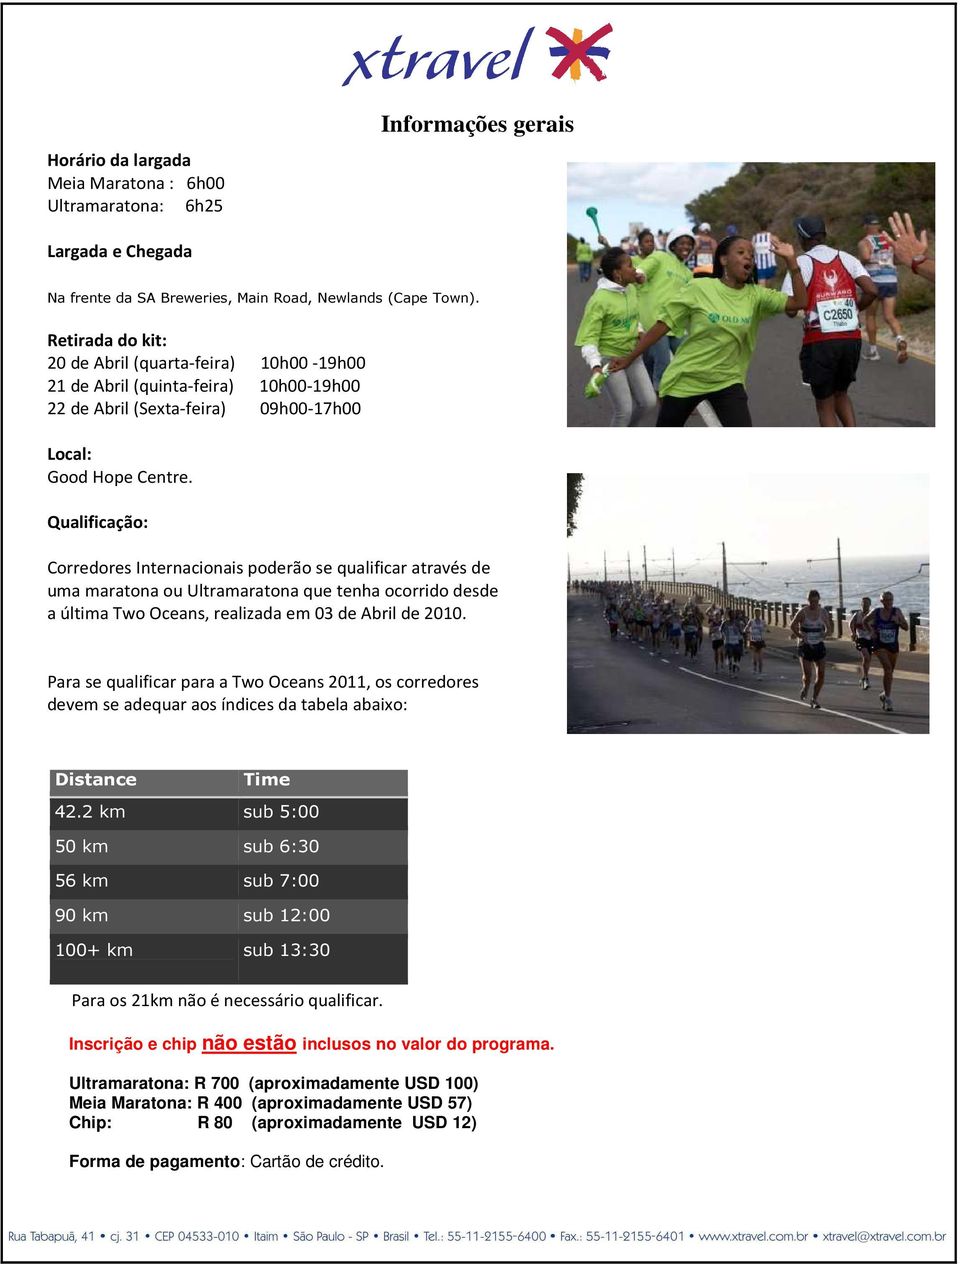 Qualificação: Corredores Internacionais poderão se qualificar através de uma maratona ou Ultramaratona que tenha ocorrido desde a última Two Oceans, realizada em 03 de Abril de 2010.